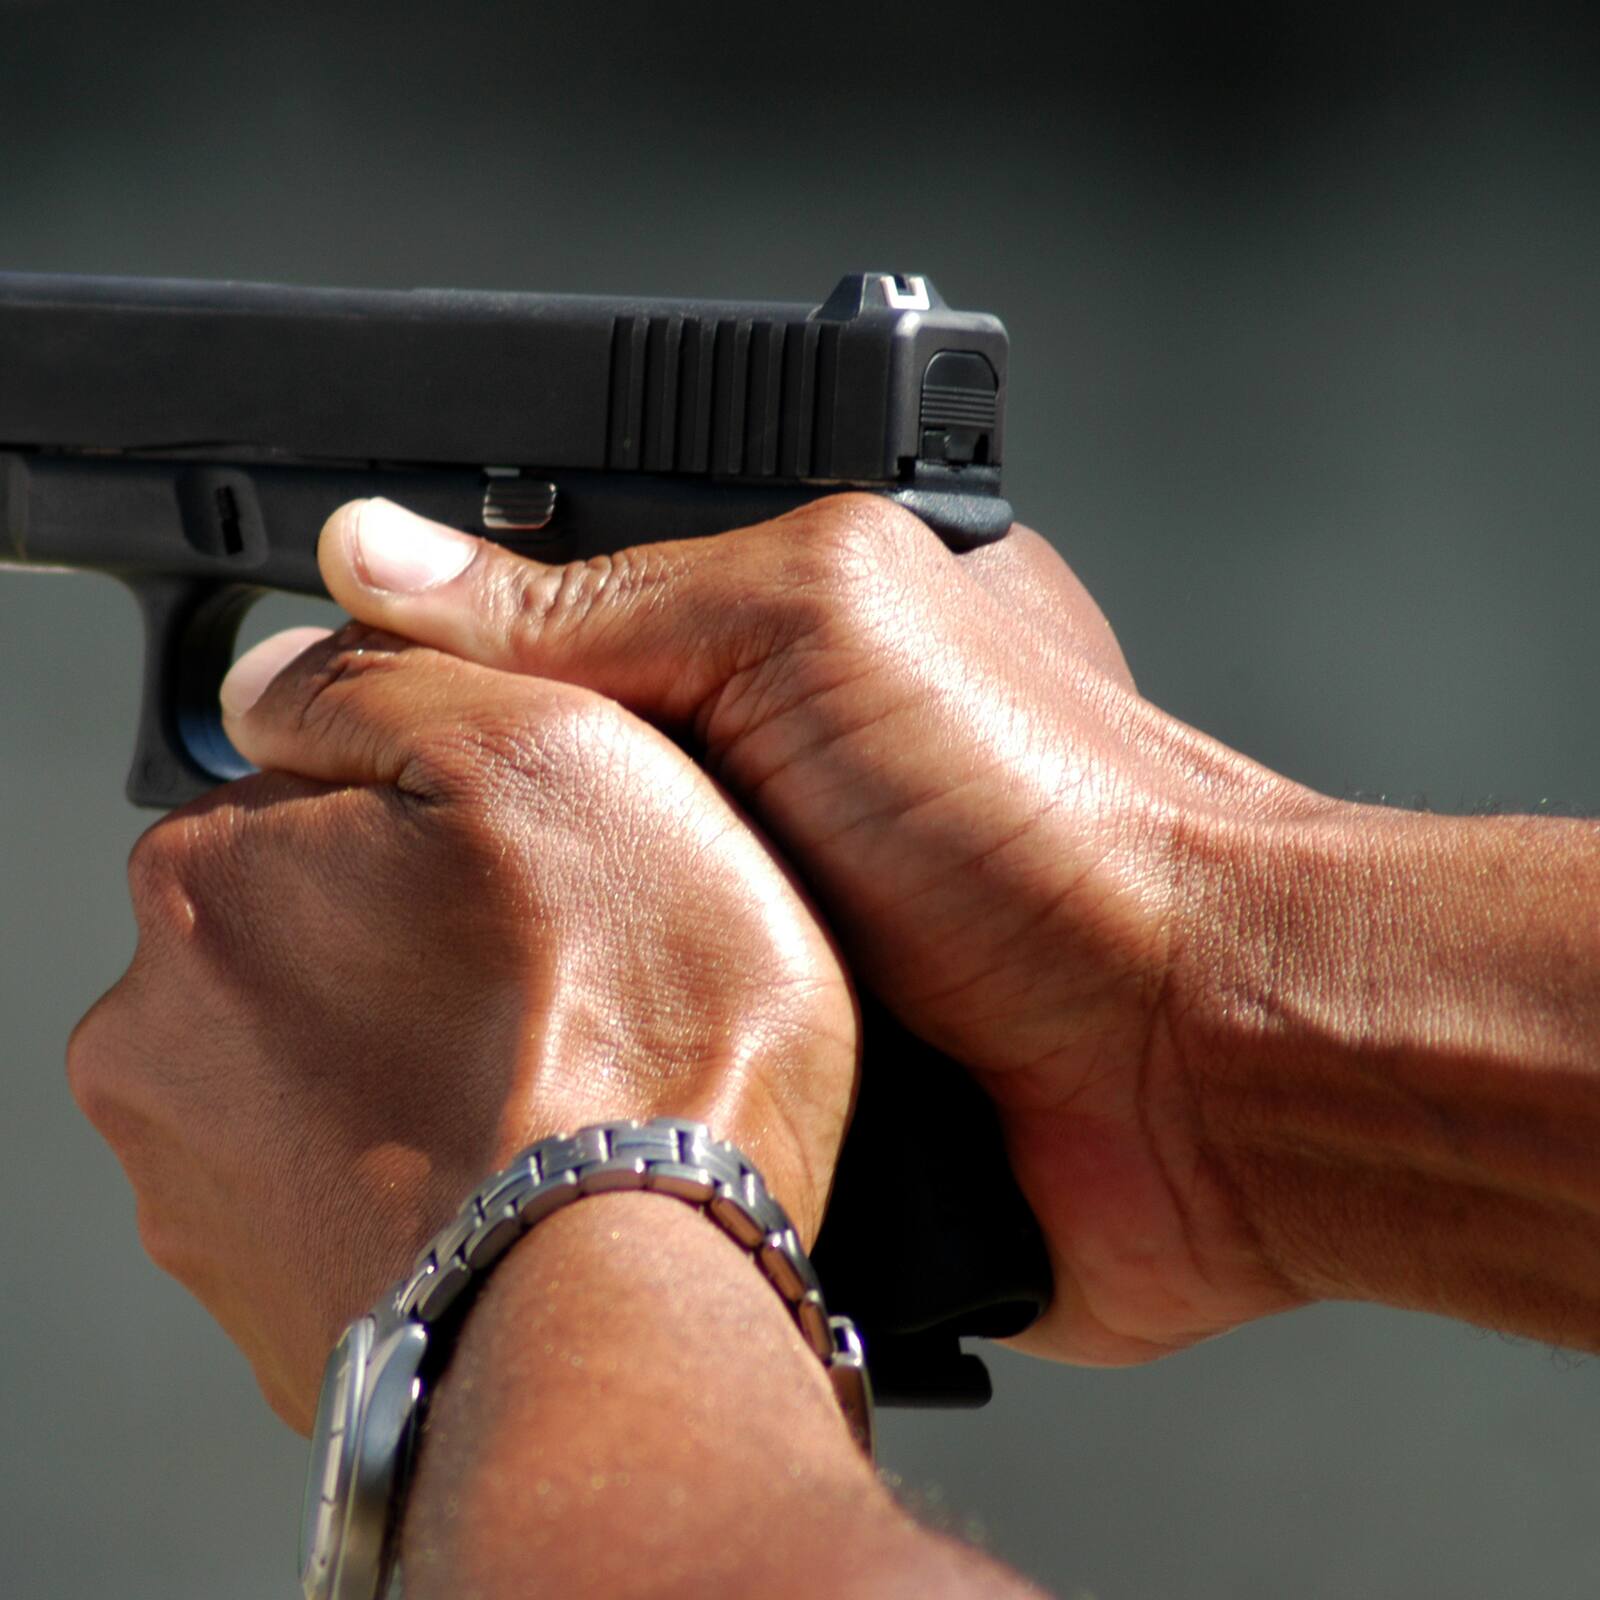 Inmigración basura: Detienen a Colombiano vendiendo arma de fogueo  modificada para balas 9mm